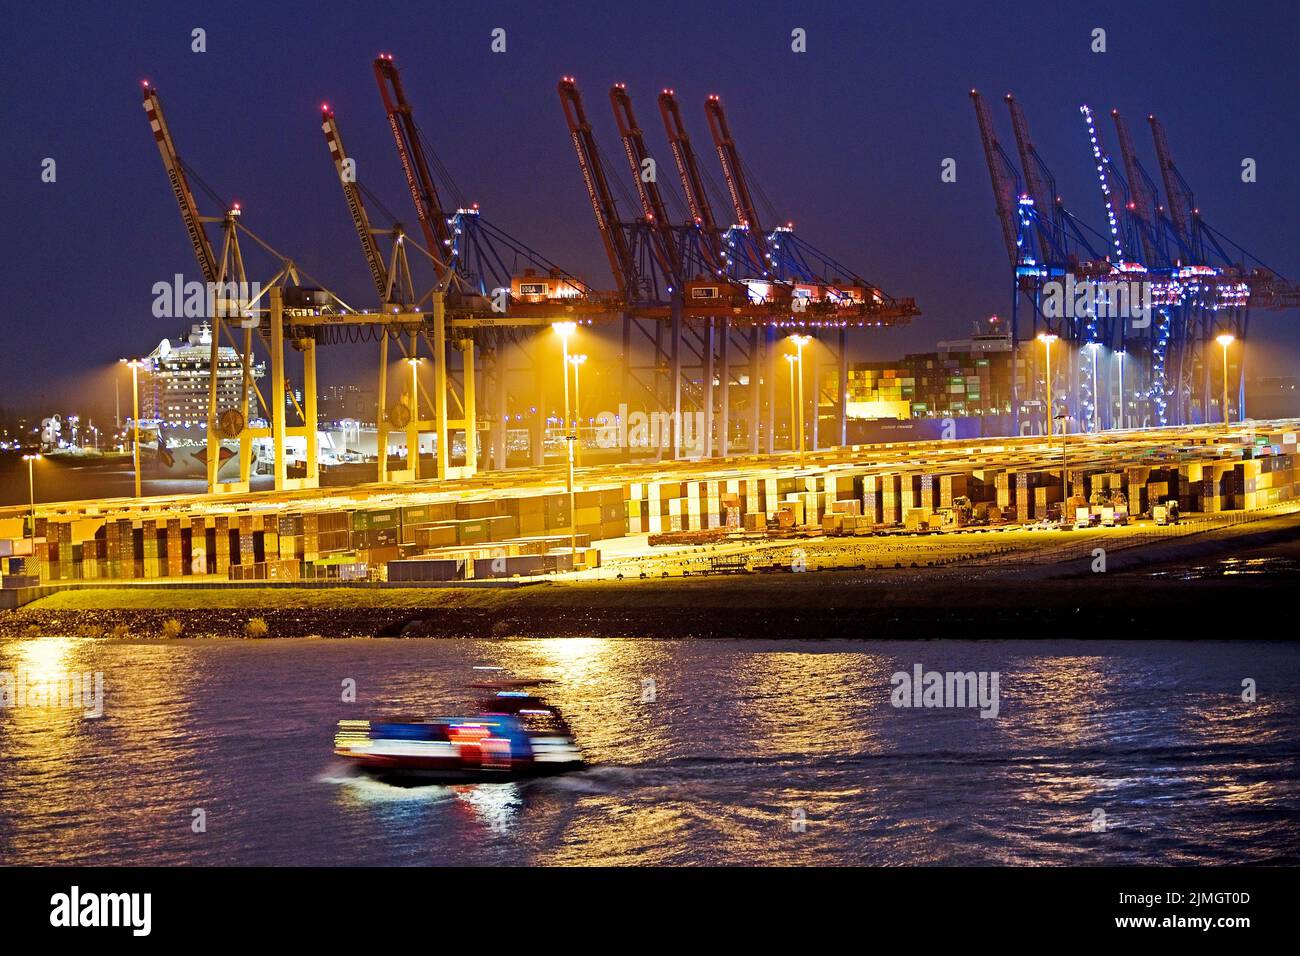 Verladung von Kränen am Containerterminal in Tollerort am Abend, Hafen Hamburg, Deutschland Stockfoto